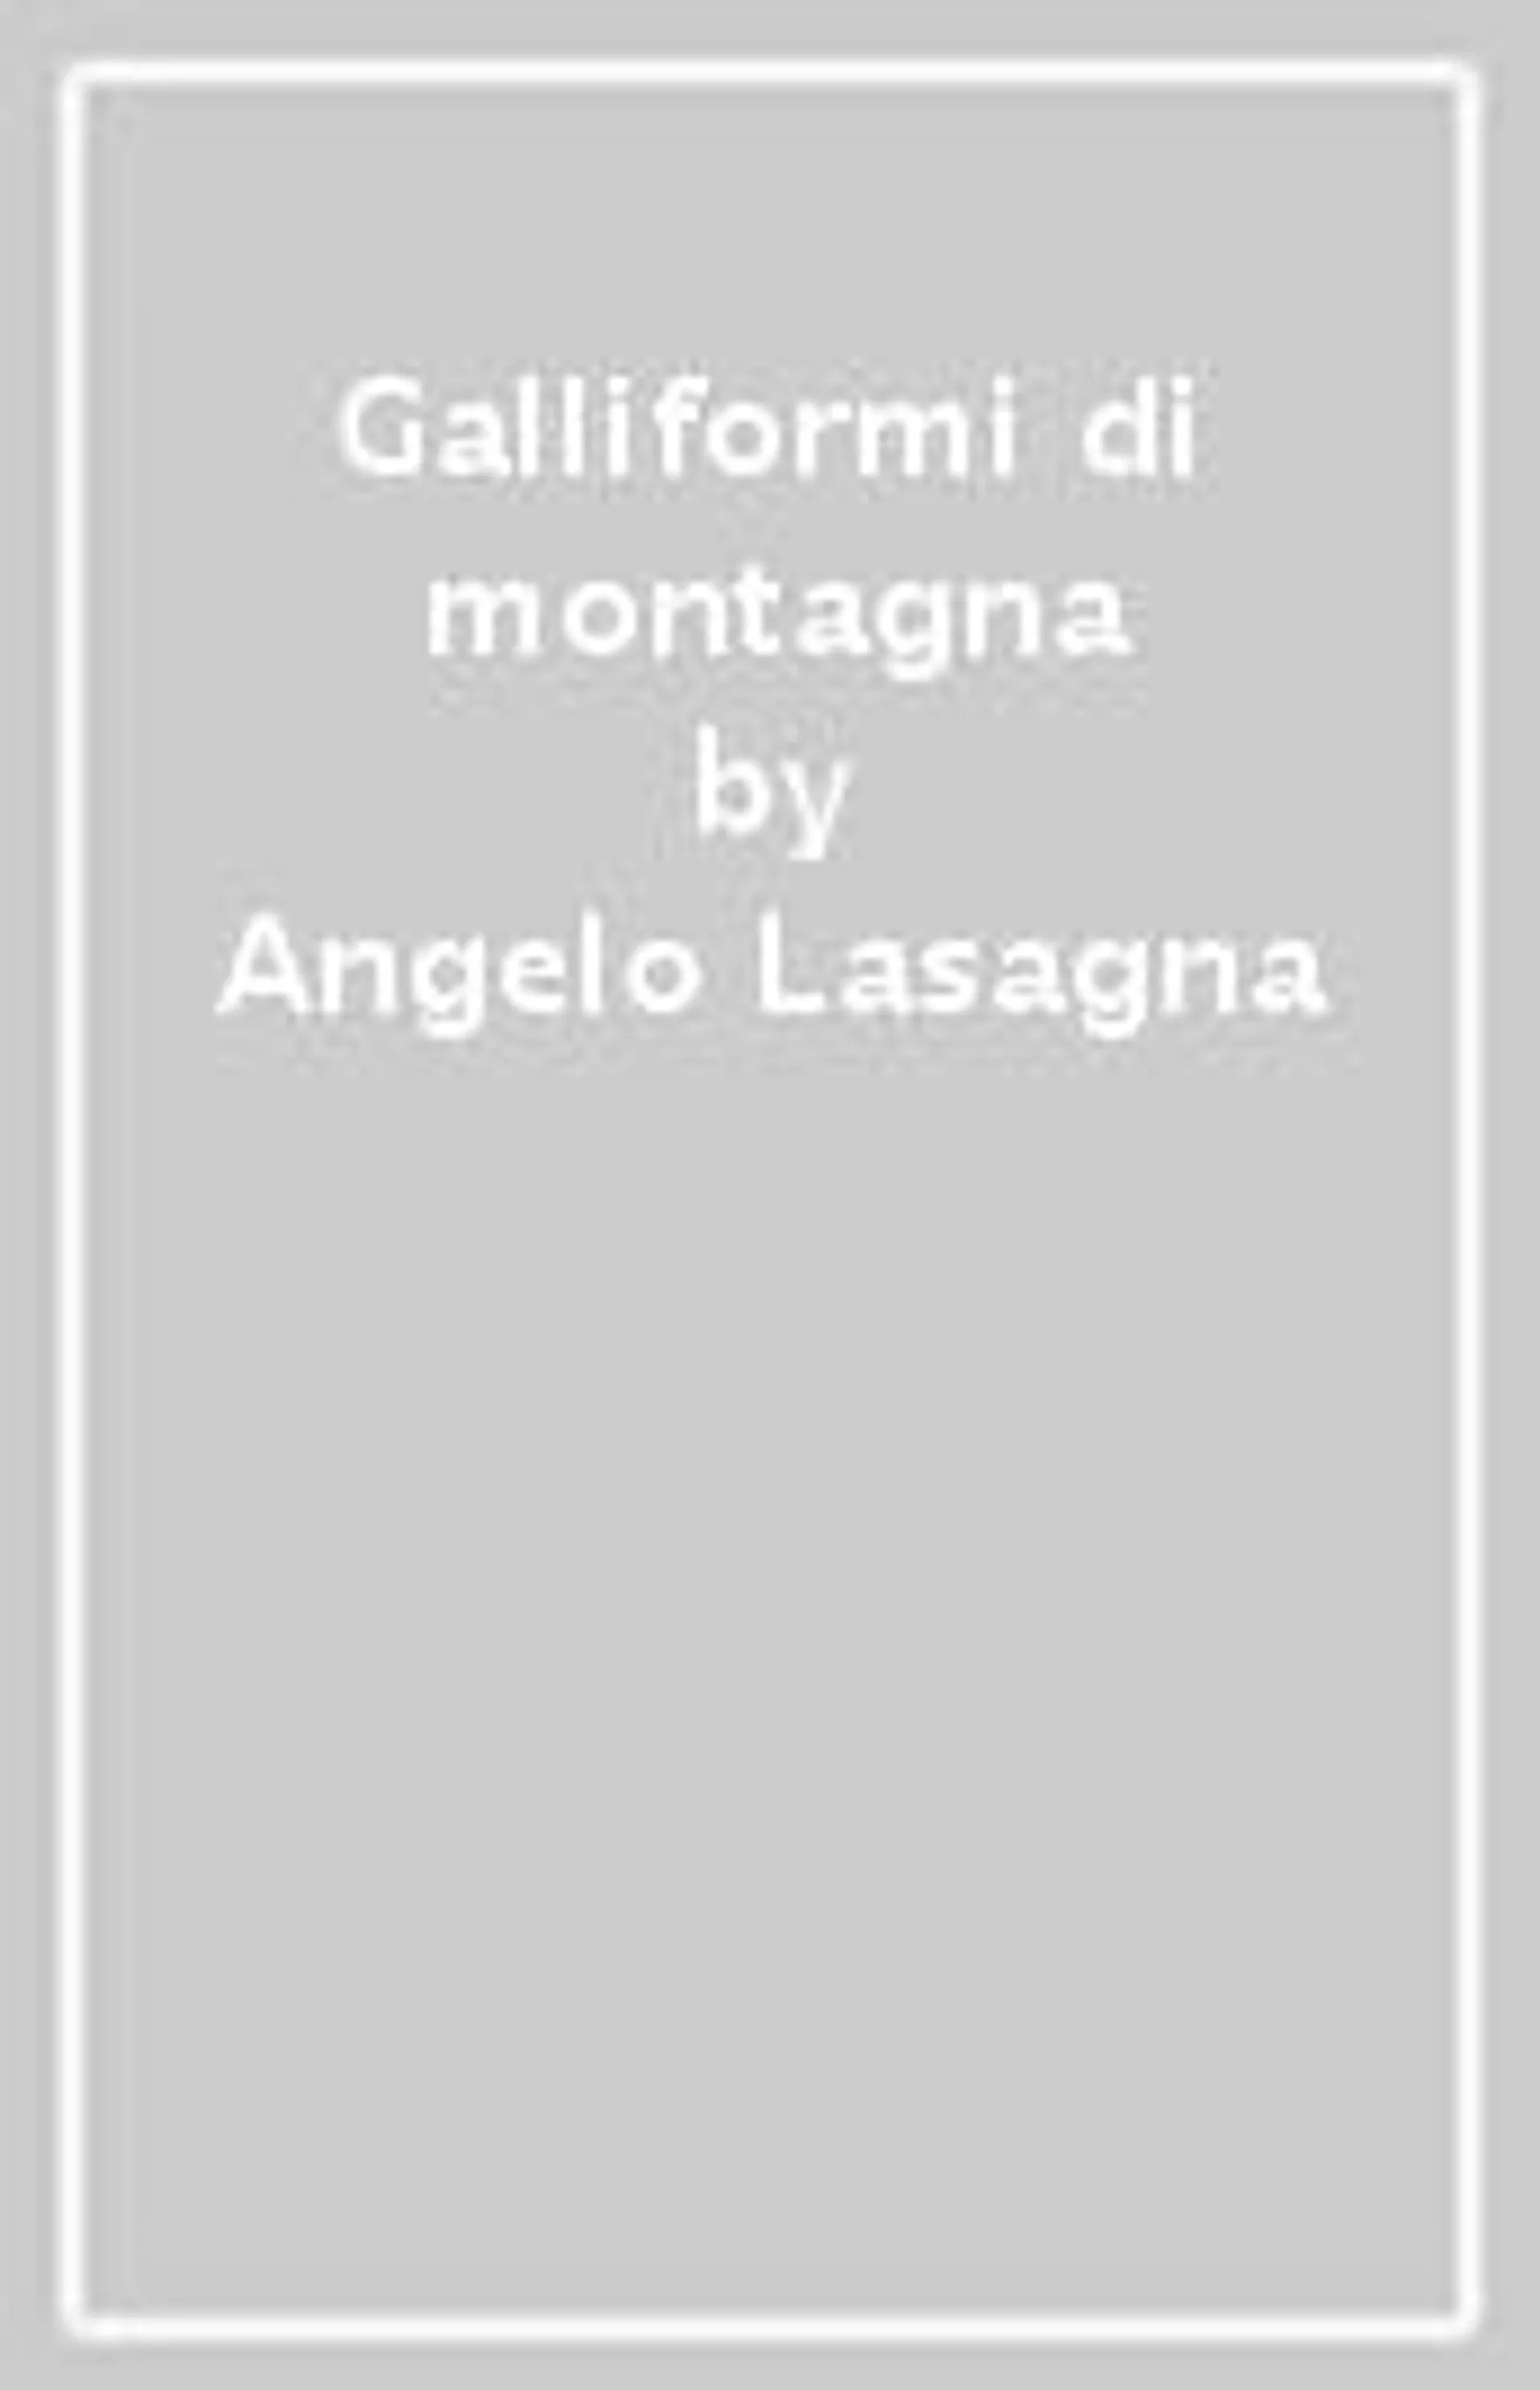 Angelo Lasagna